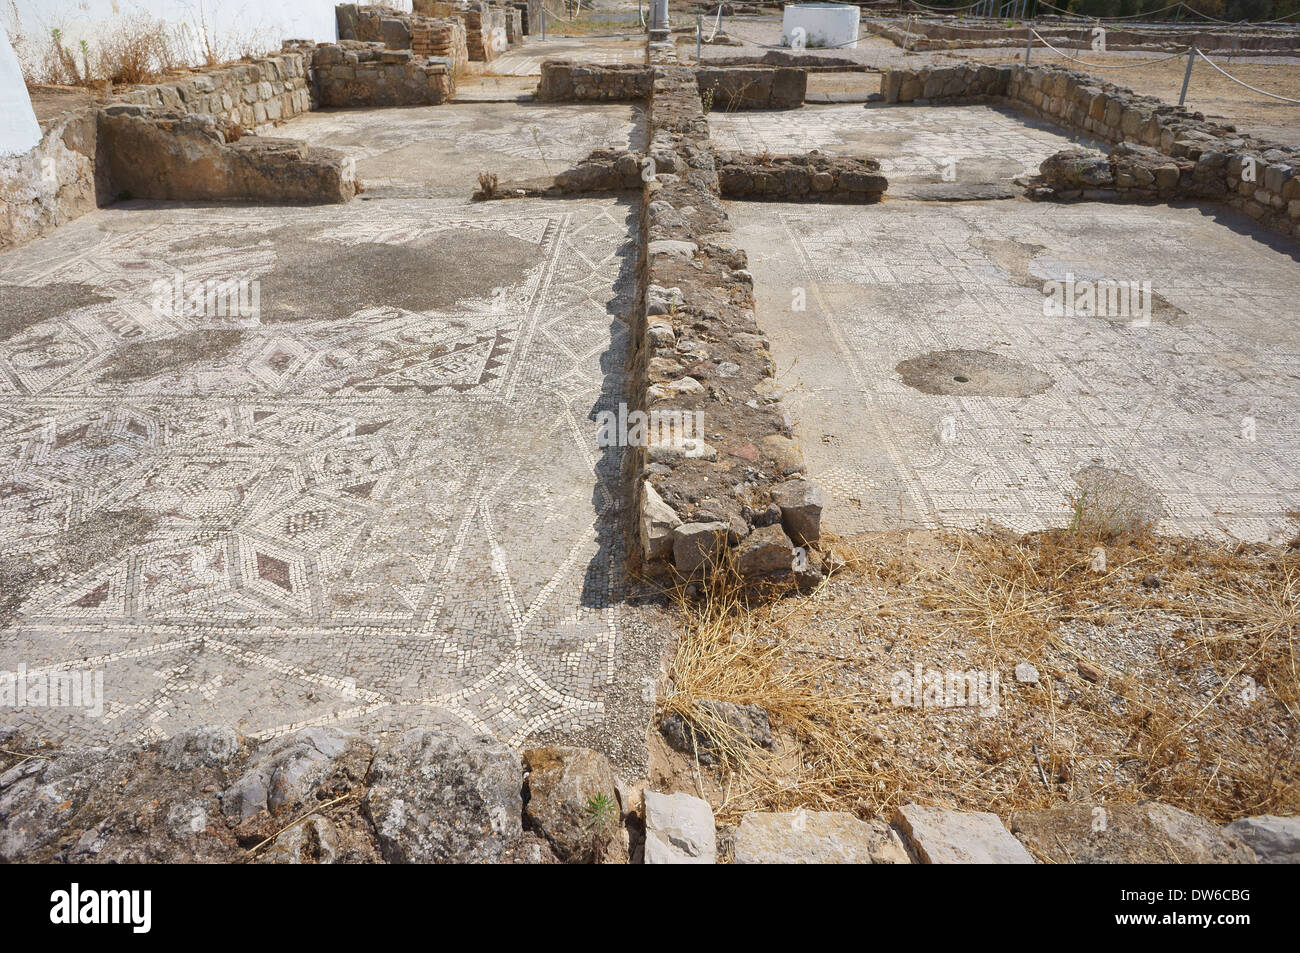 Las excavaciones romanas antiguas Milreu Algarve Portugal Foto de stock